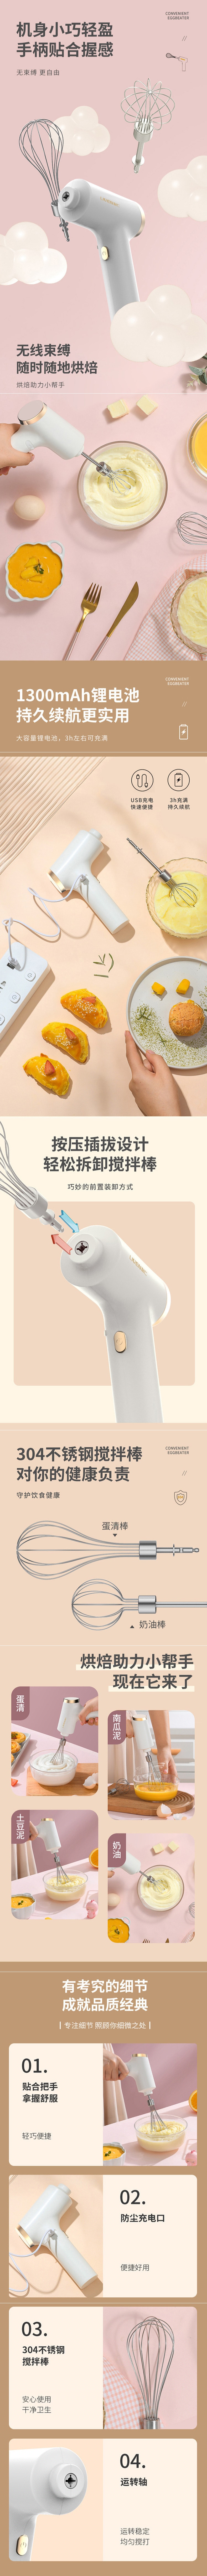 【中国直邮】利仁 无线打蛋器打蛋机 电动奶油打发器 USB充电 蛋糕烘焙搅拌机手持无线打蛋器